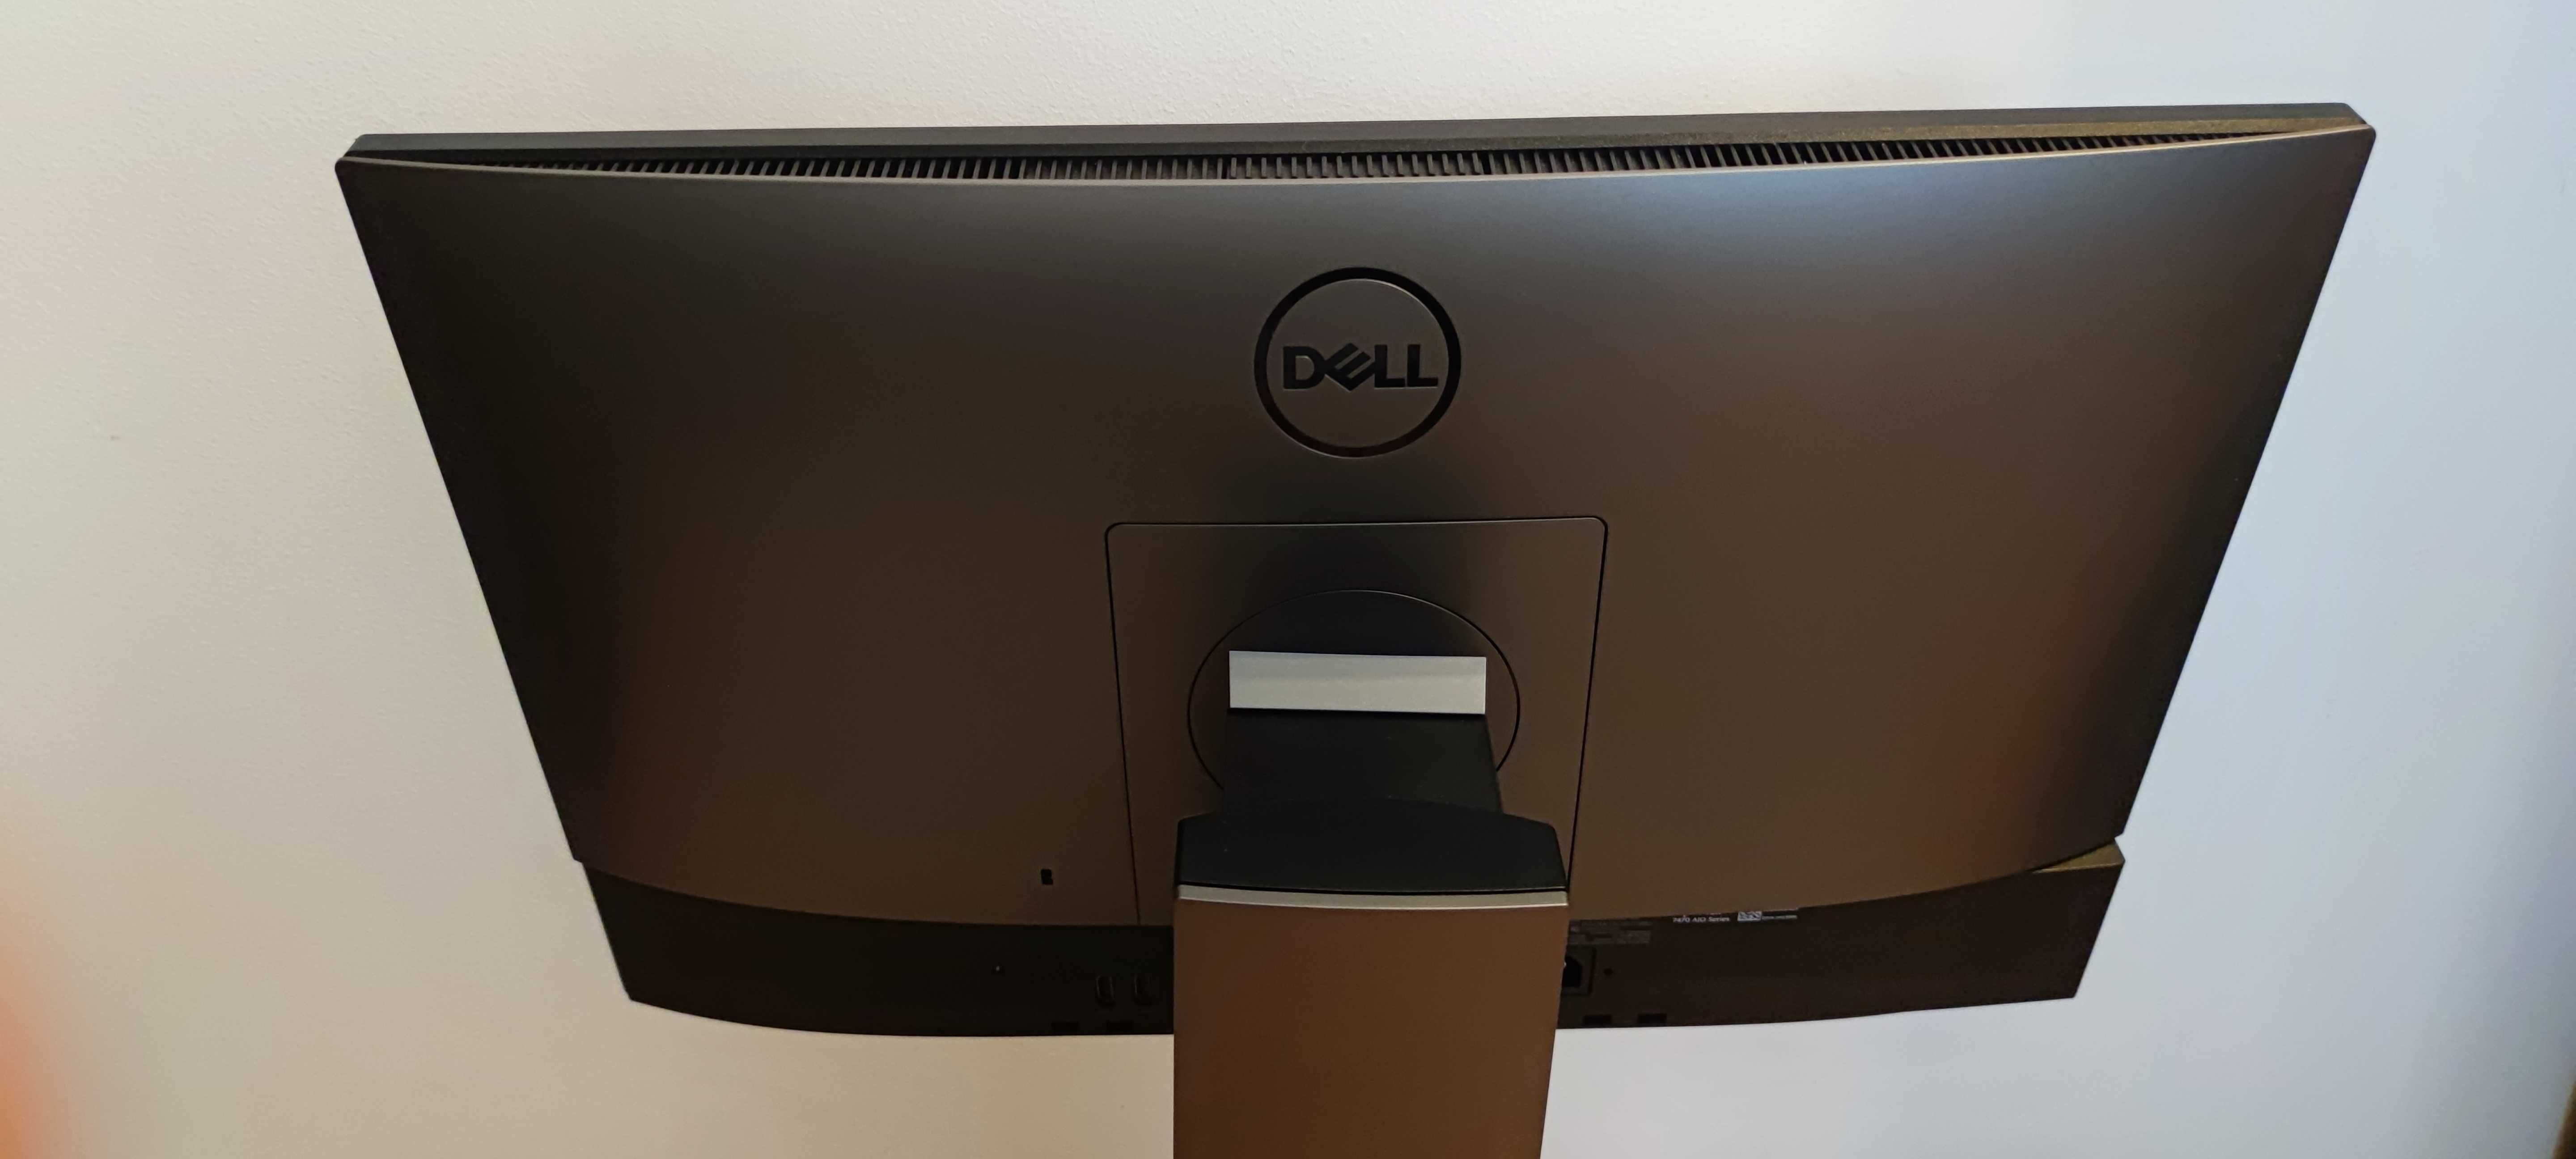 Unitate PC calculator Dell all in one cu i5 9500, 12 ore de utilizare